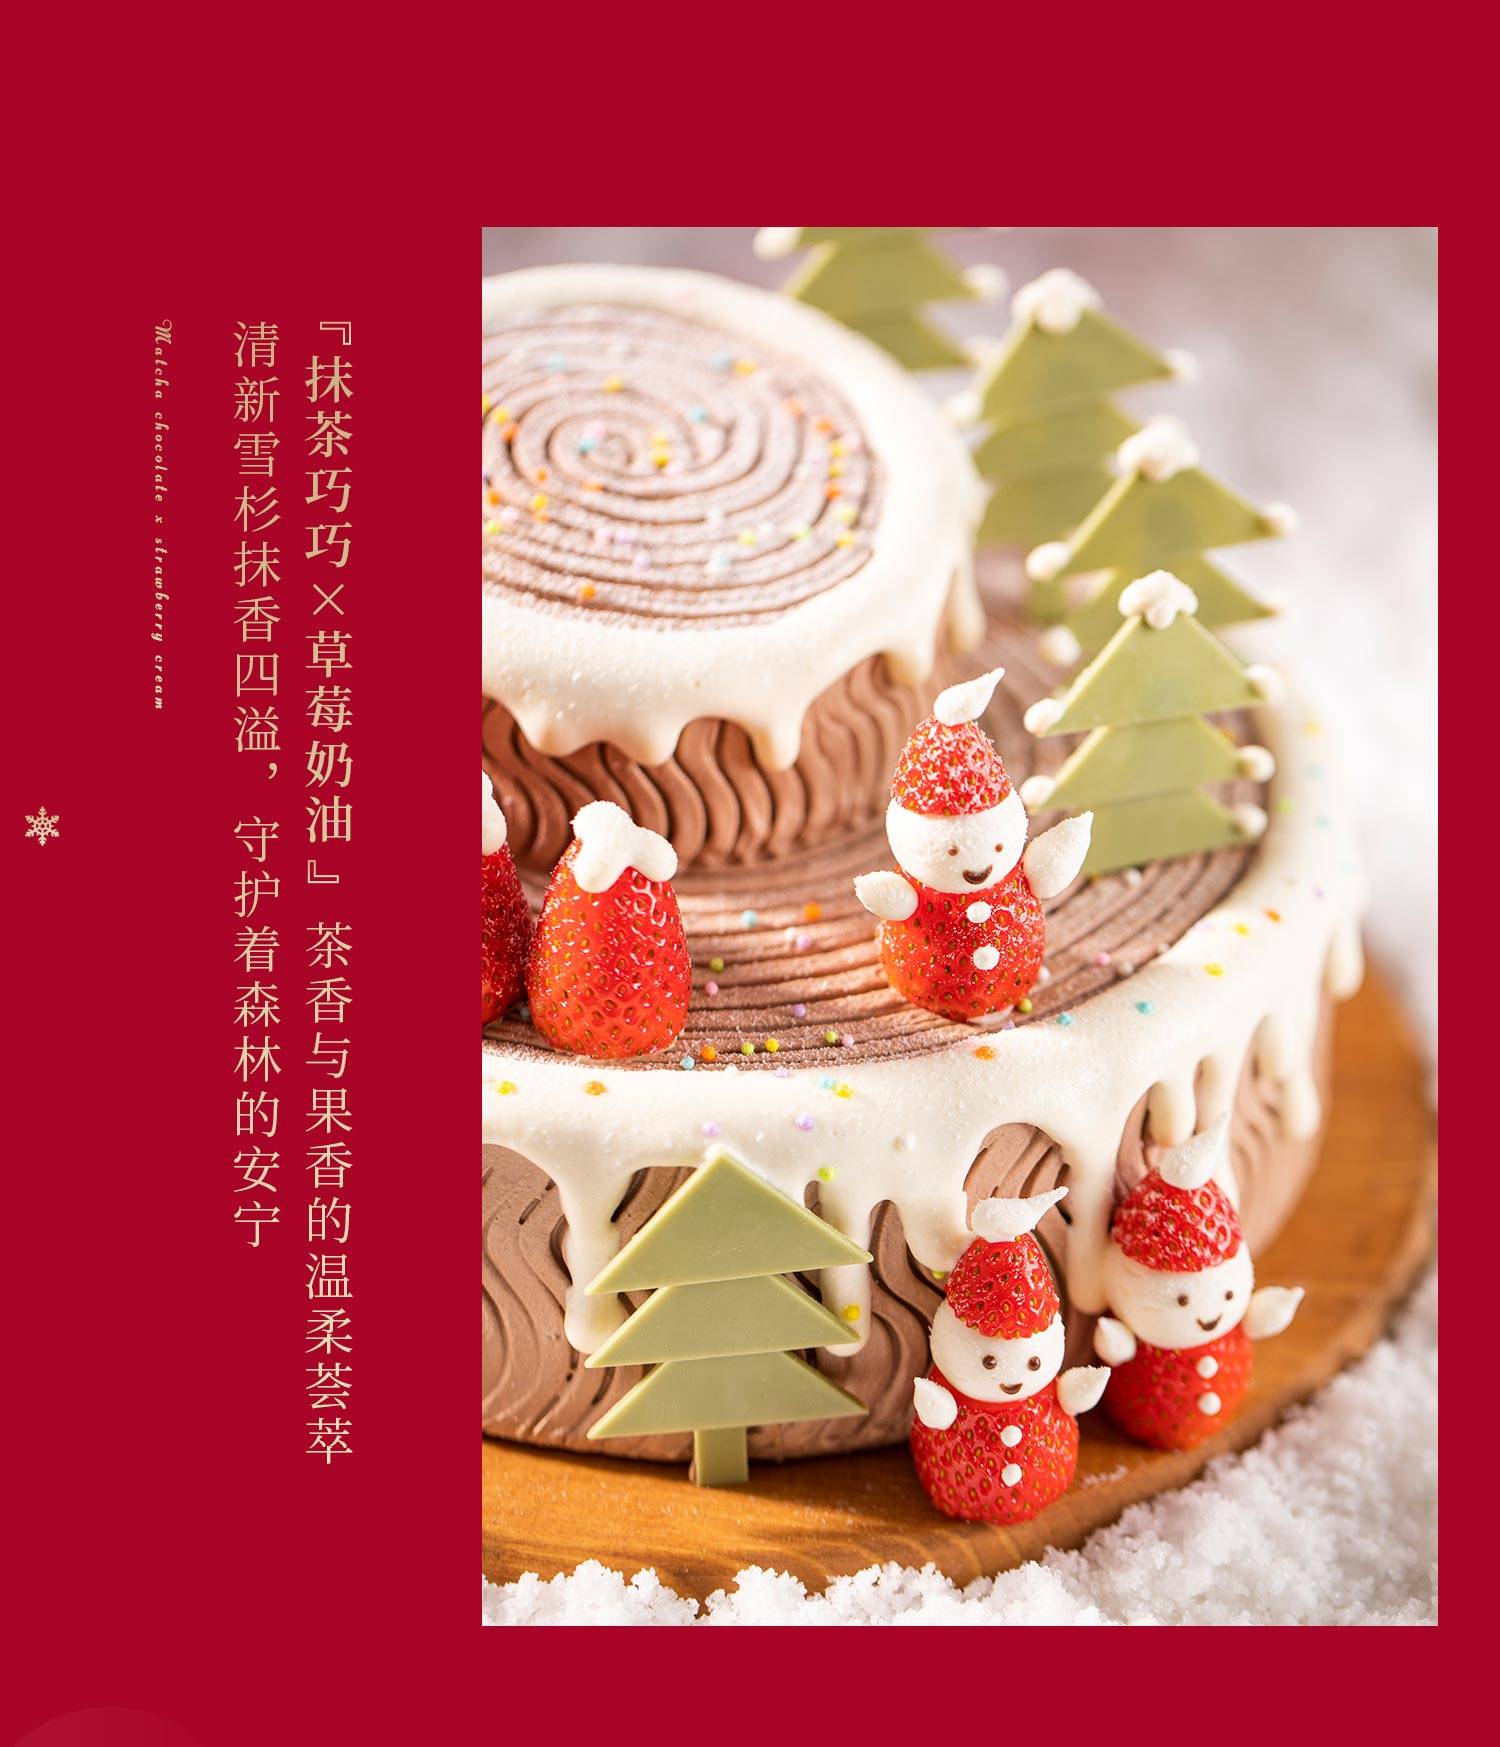 白色隔离雪人的漂亮圣诞小蛋糕 库存图片. 图片 包括有 烹饪, 细菌学, 圣诞节, 新建, 食物, 厨师 - 240997007